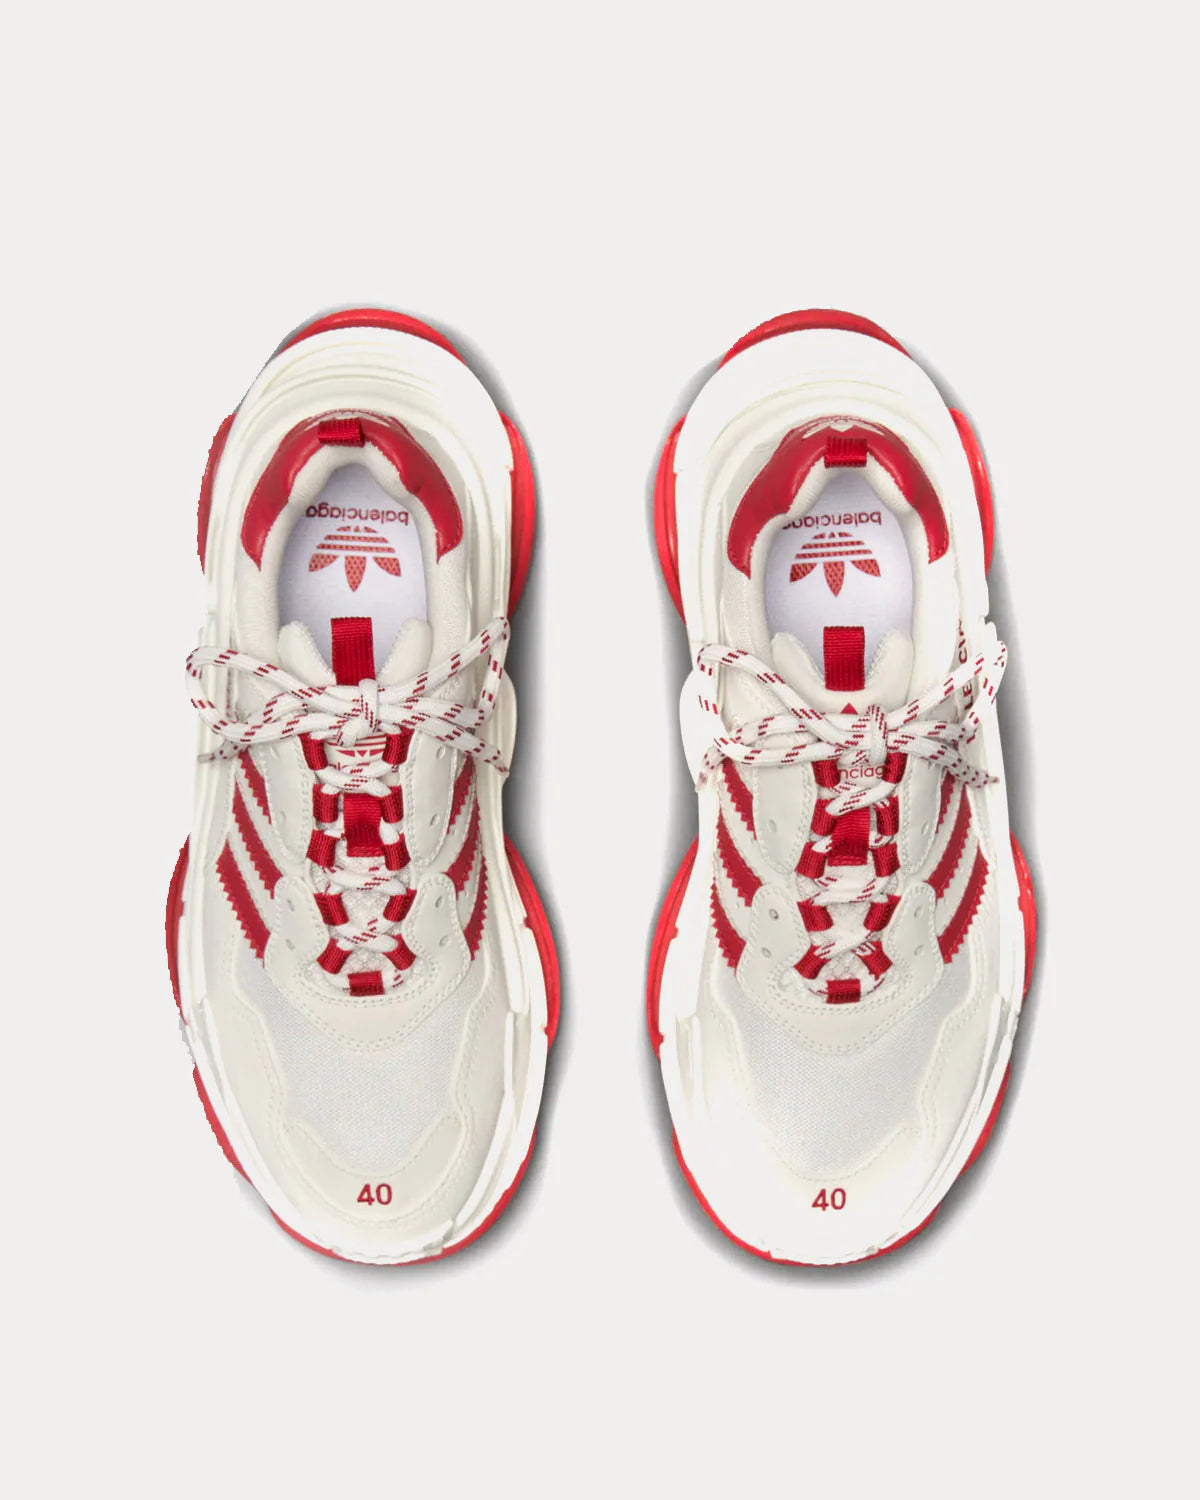 BALENCIAGA X ADIDAS Triple S White  White  Red Low Top Sneakers